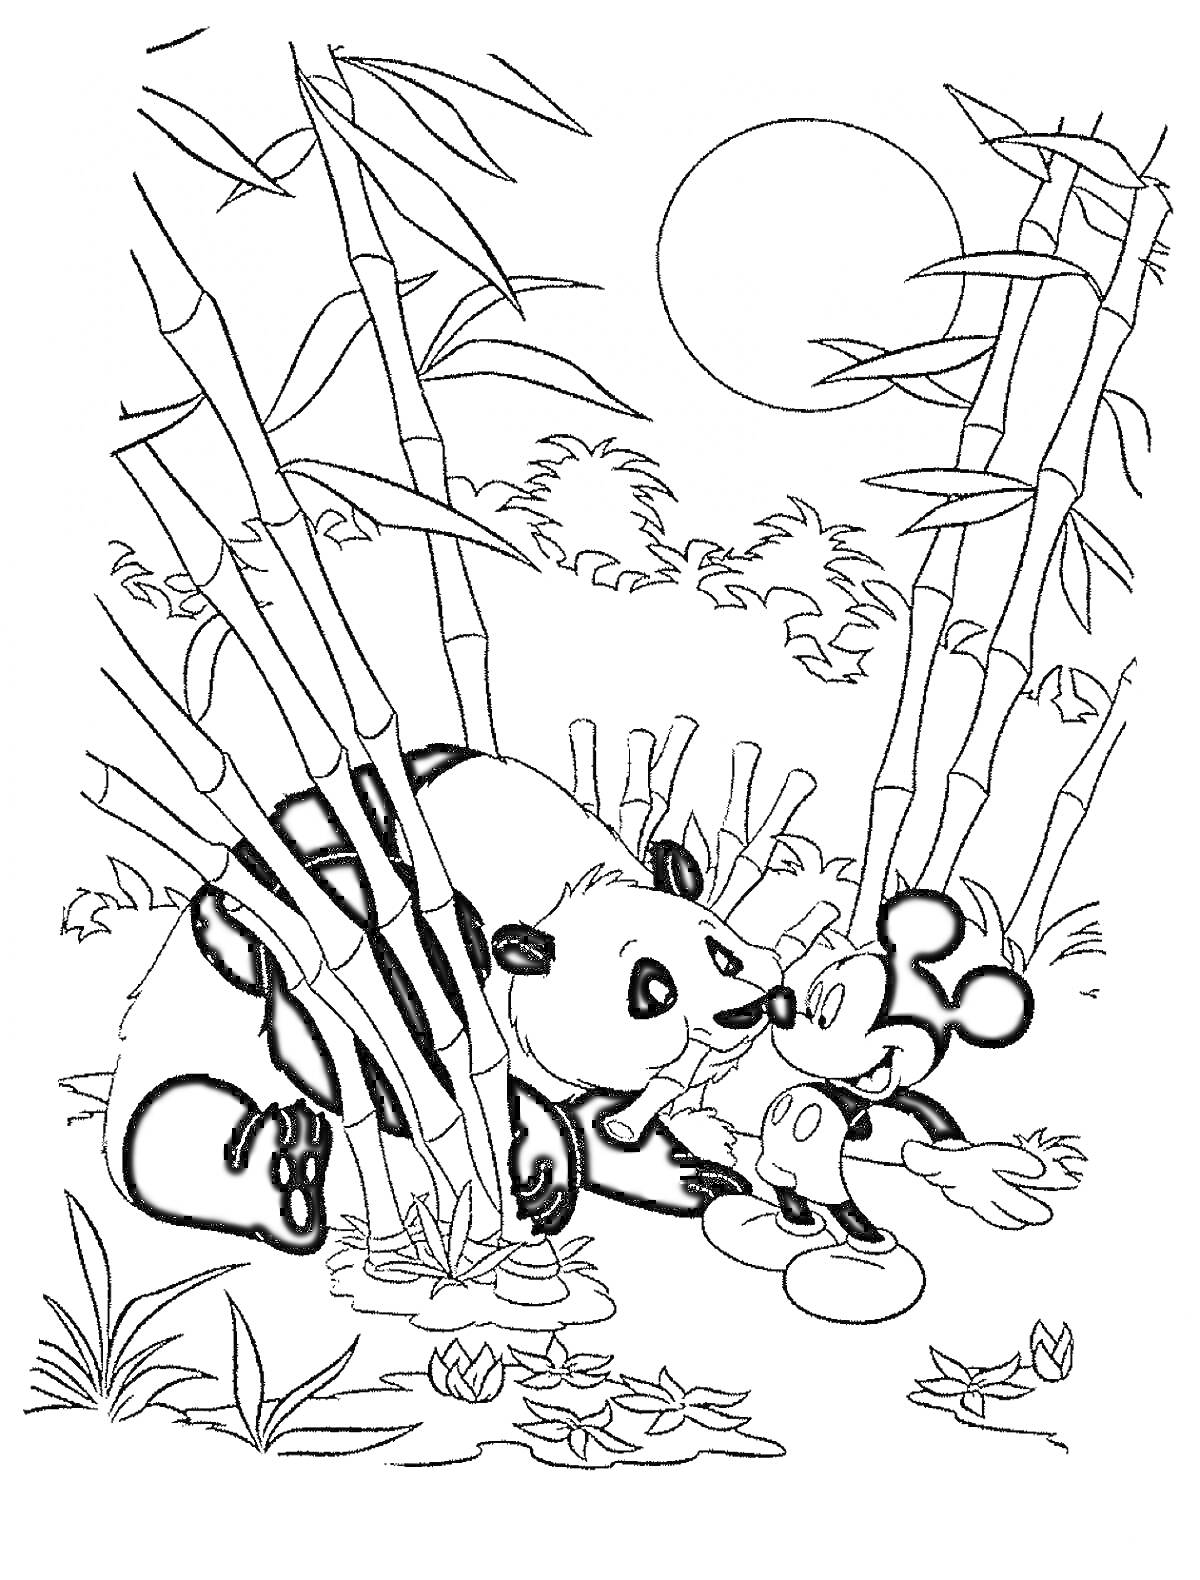 Раскраска Панда и Микки Маус в бамбуковом лесу под солнцем